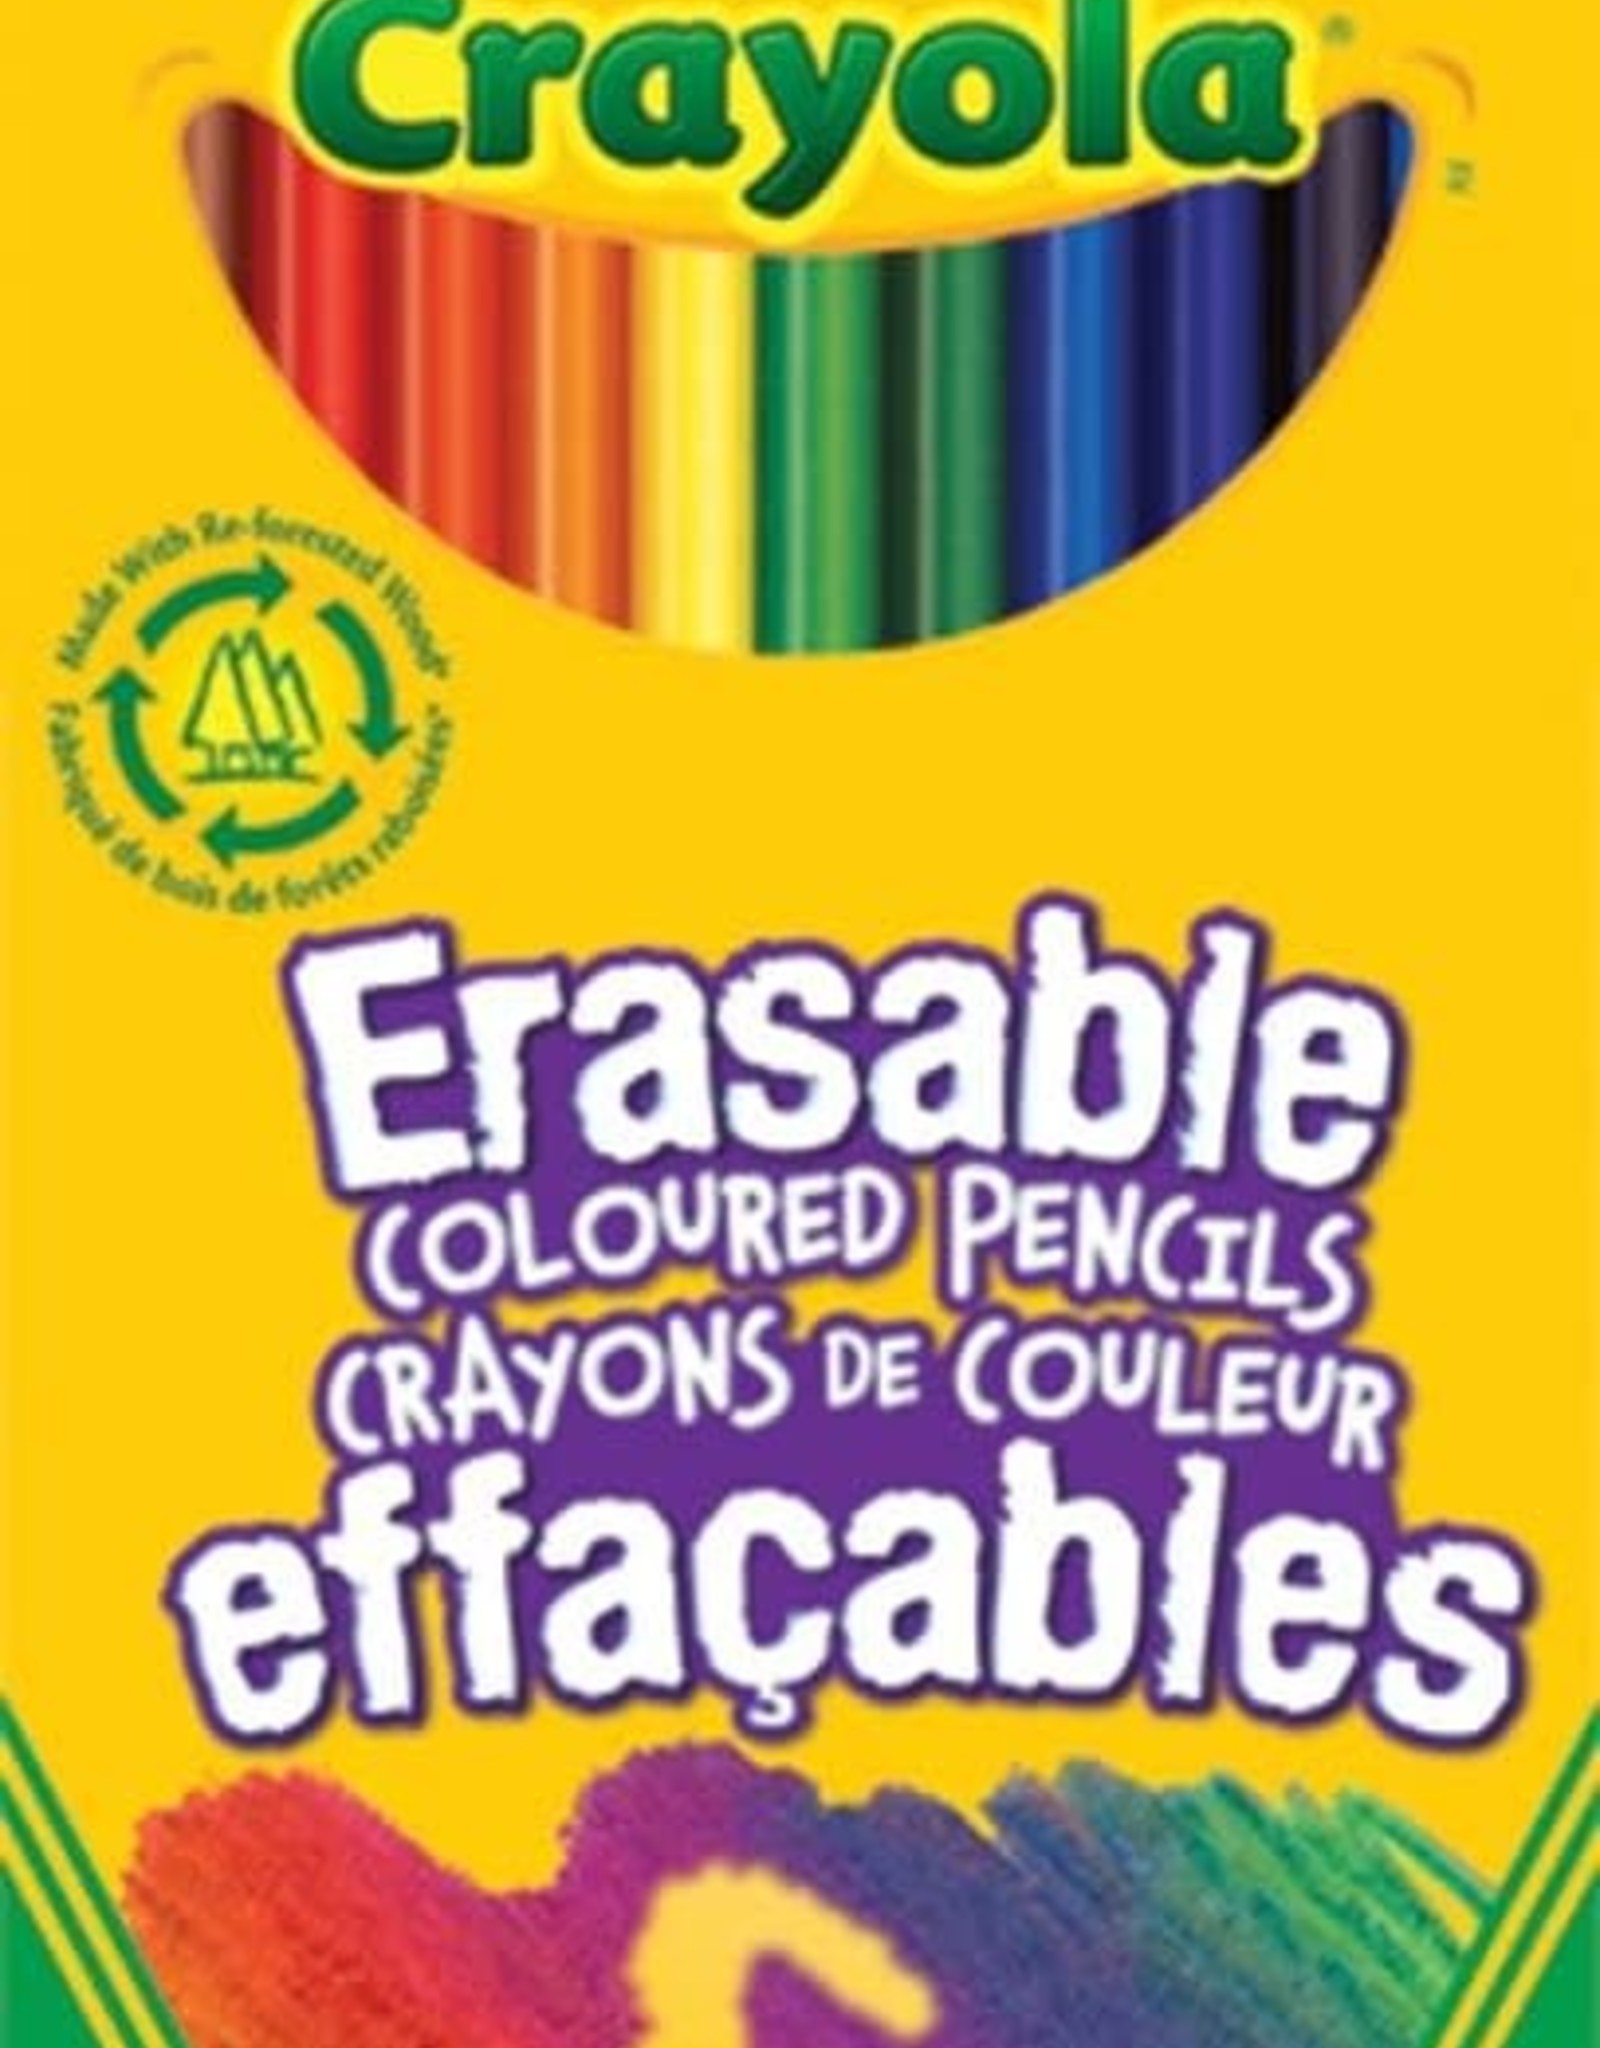 Crayola Crayola 24 Erasable Coloured Pencils